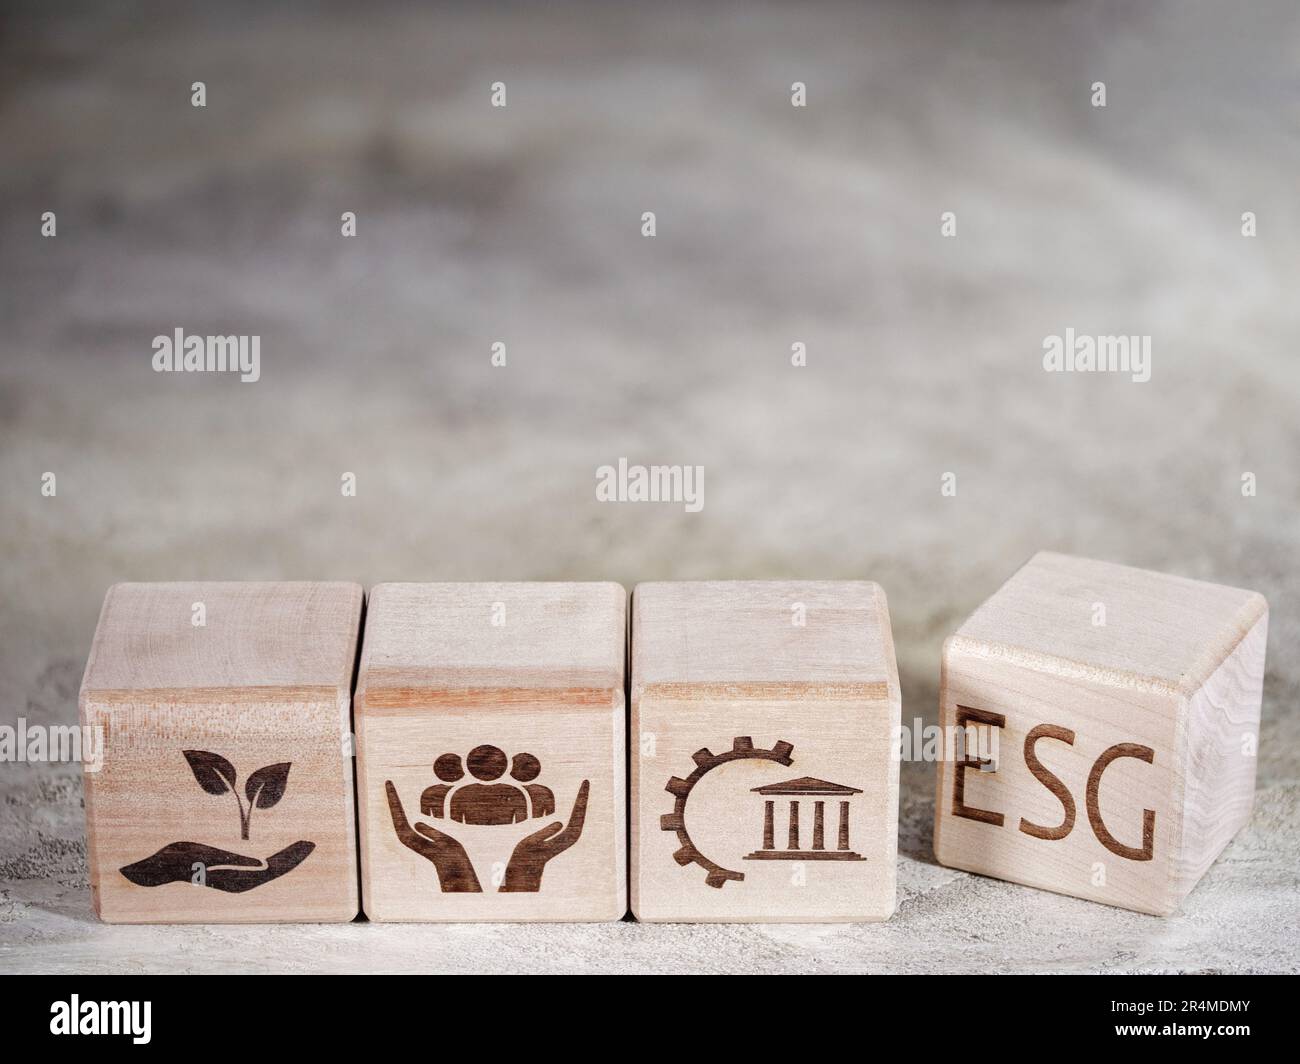 Simboli dei criteri ESG su blocchi di legno come concetto di principi di gestione aziendale Foto Stock